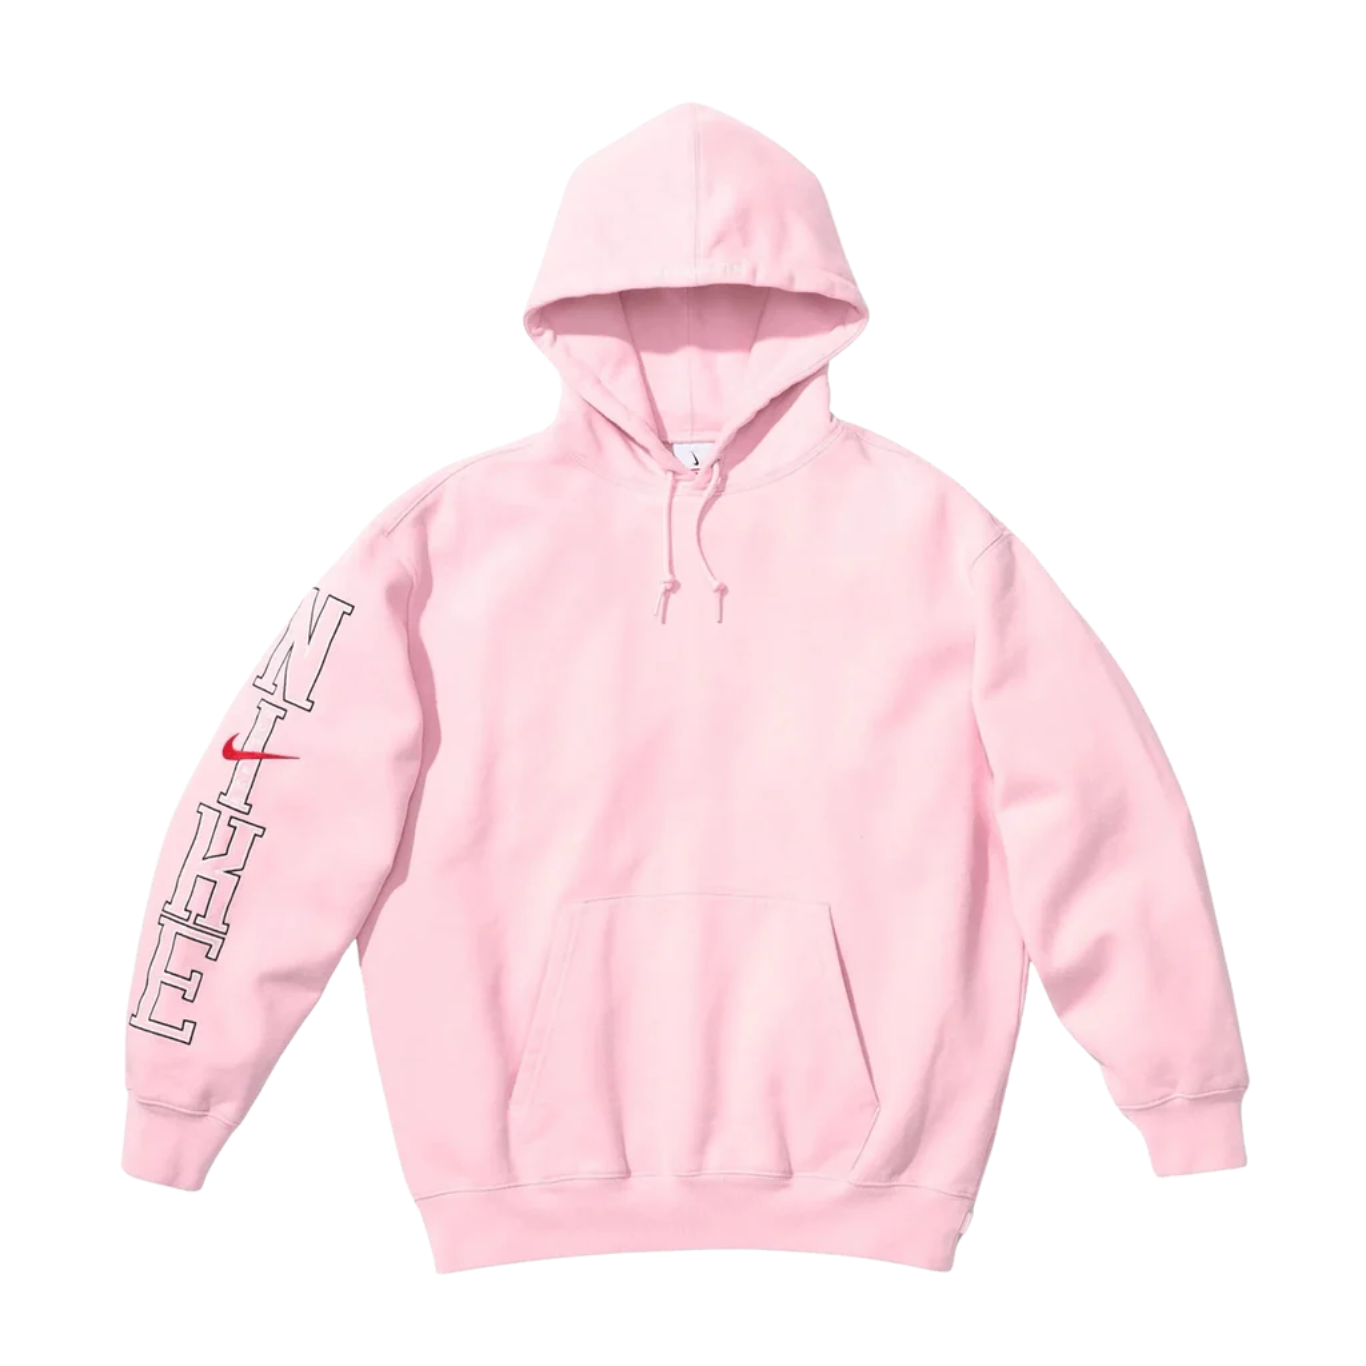 Supreme x Nike Hooded Sweatshirt 'Pink'